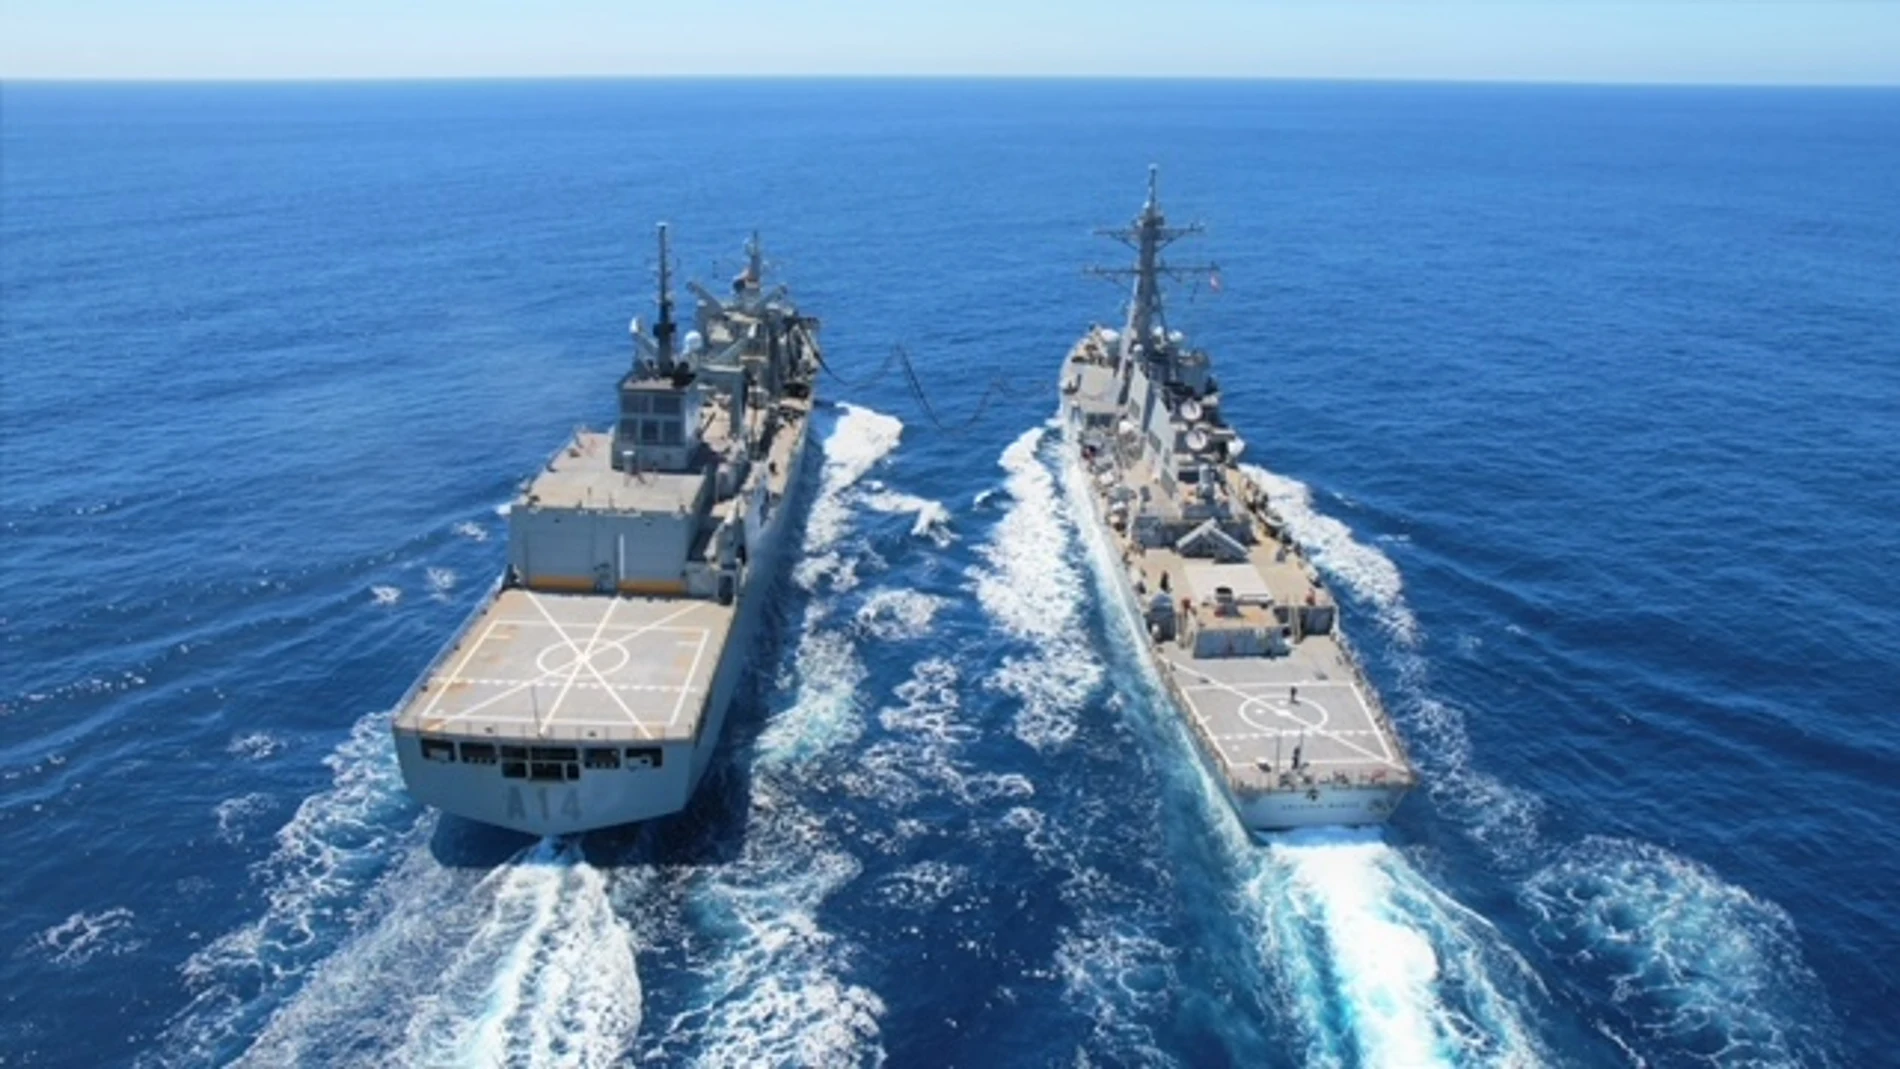 La fragata “Santa María” y el destructor norteamericano “USS Arleigh Burke” durante las maniobras